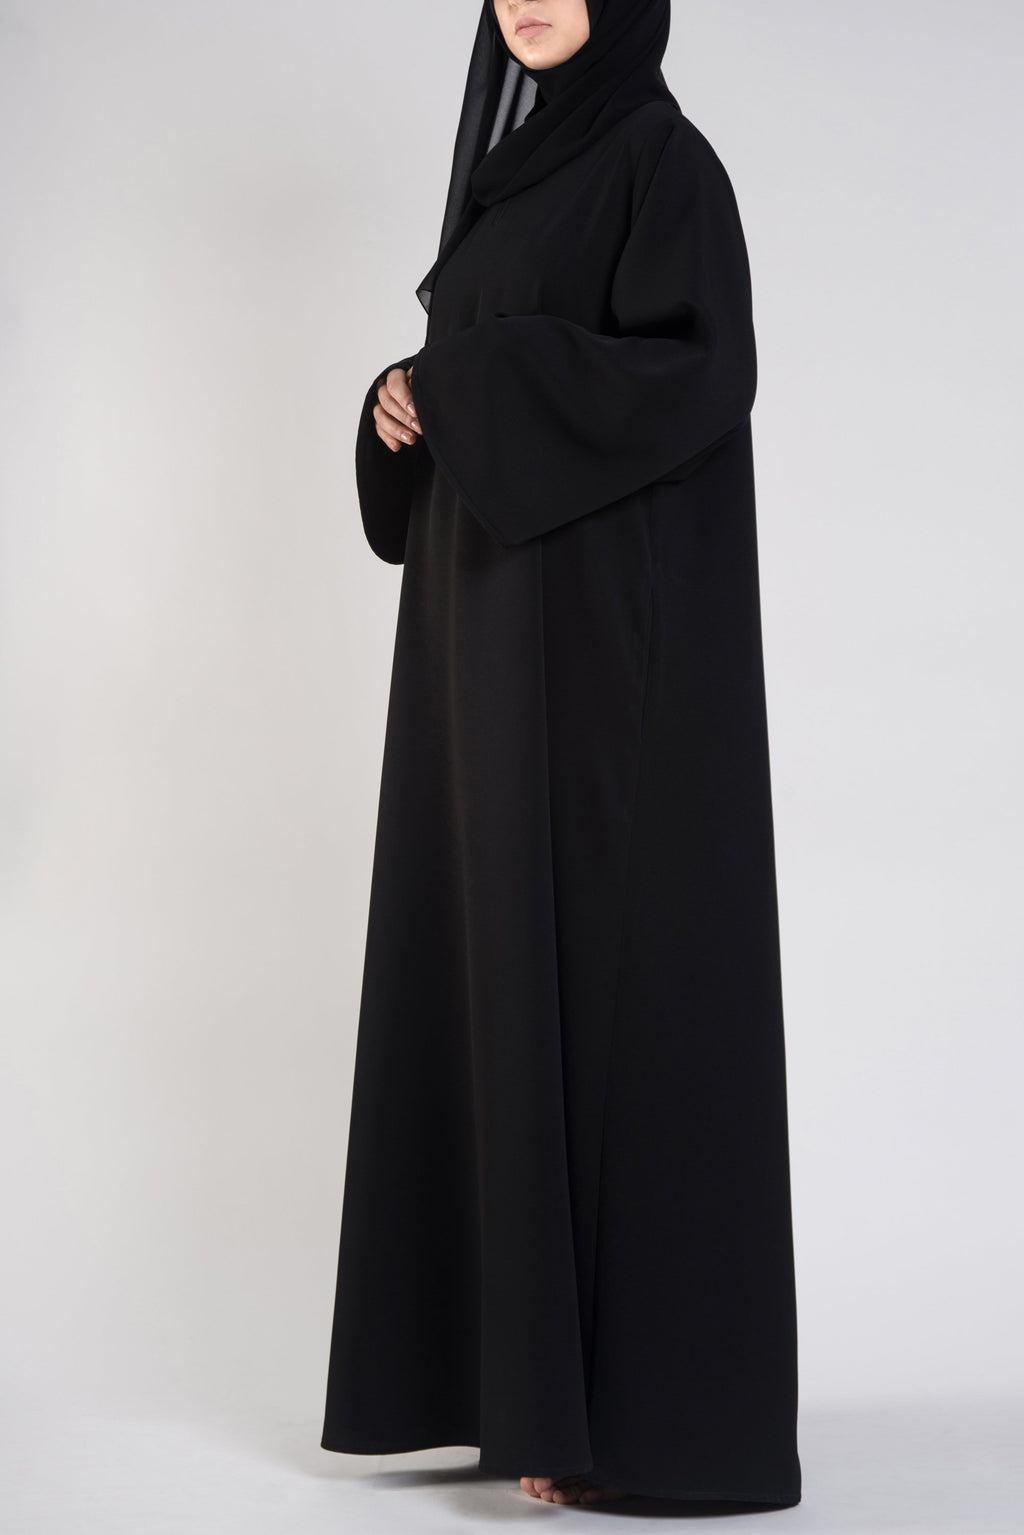 style-modest-clothing-Dubai-online-Abaya